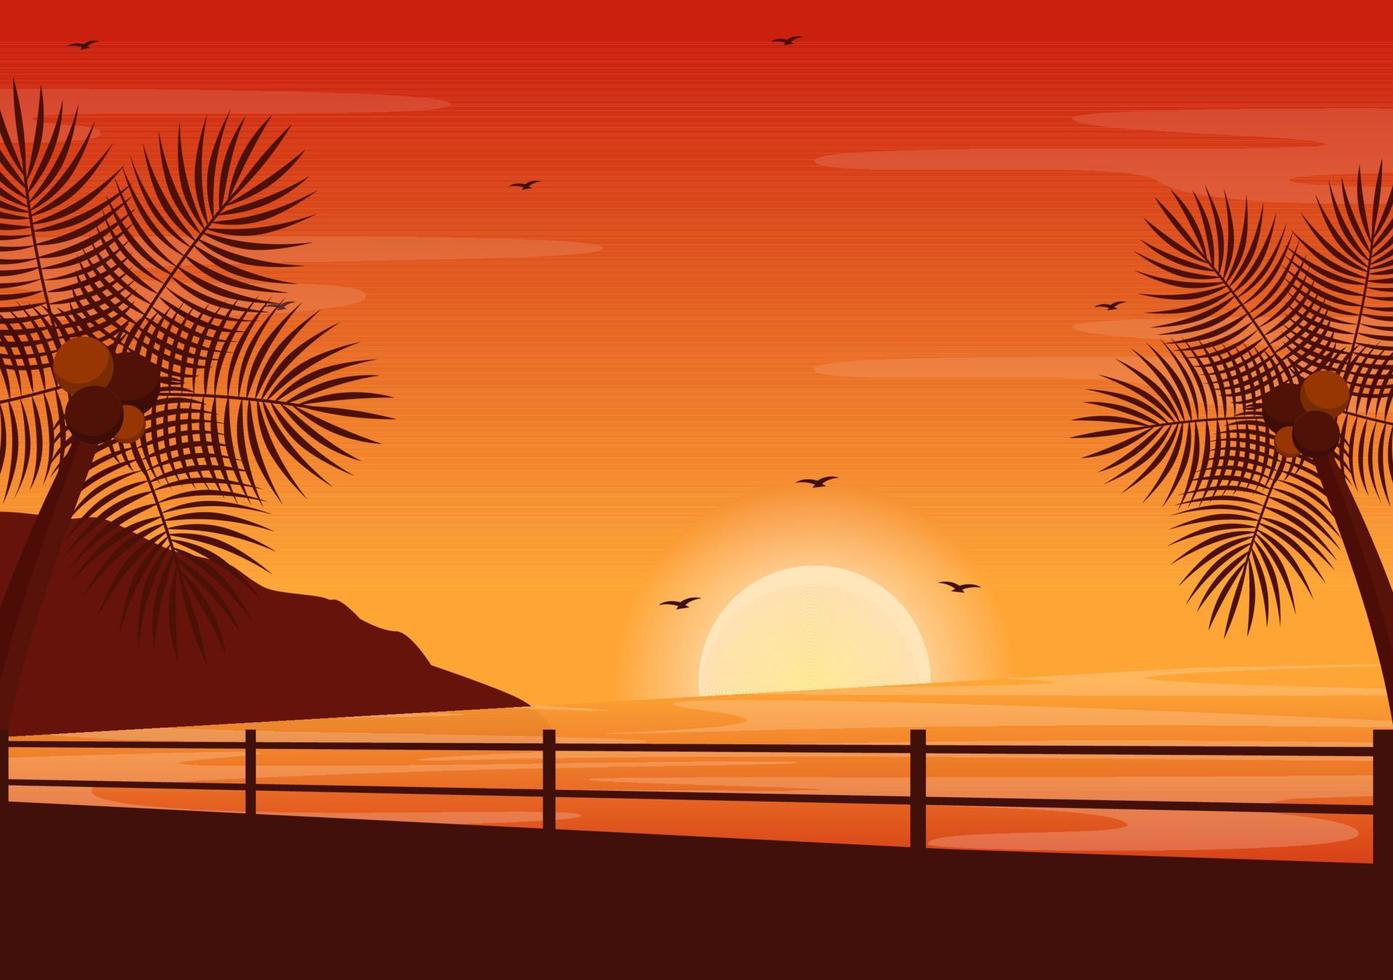 Meer Sonnenuntergang Landschaft der Sonne über dem Ozean mit Wolken, Wasseroberfläche, Palme und Strand in flacher Hintergrundillustration für Poster, Banner oder Hintergrund vektor